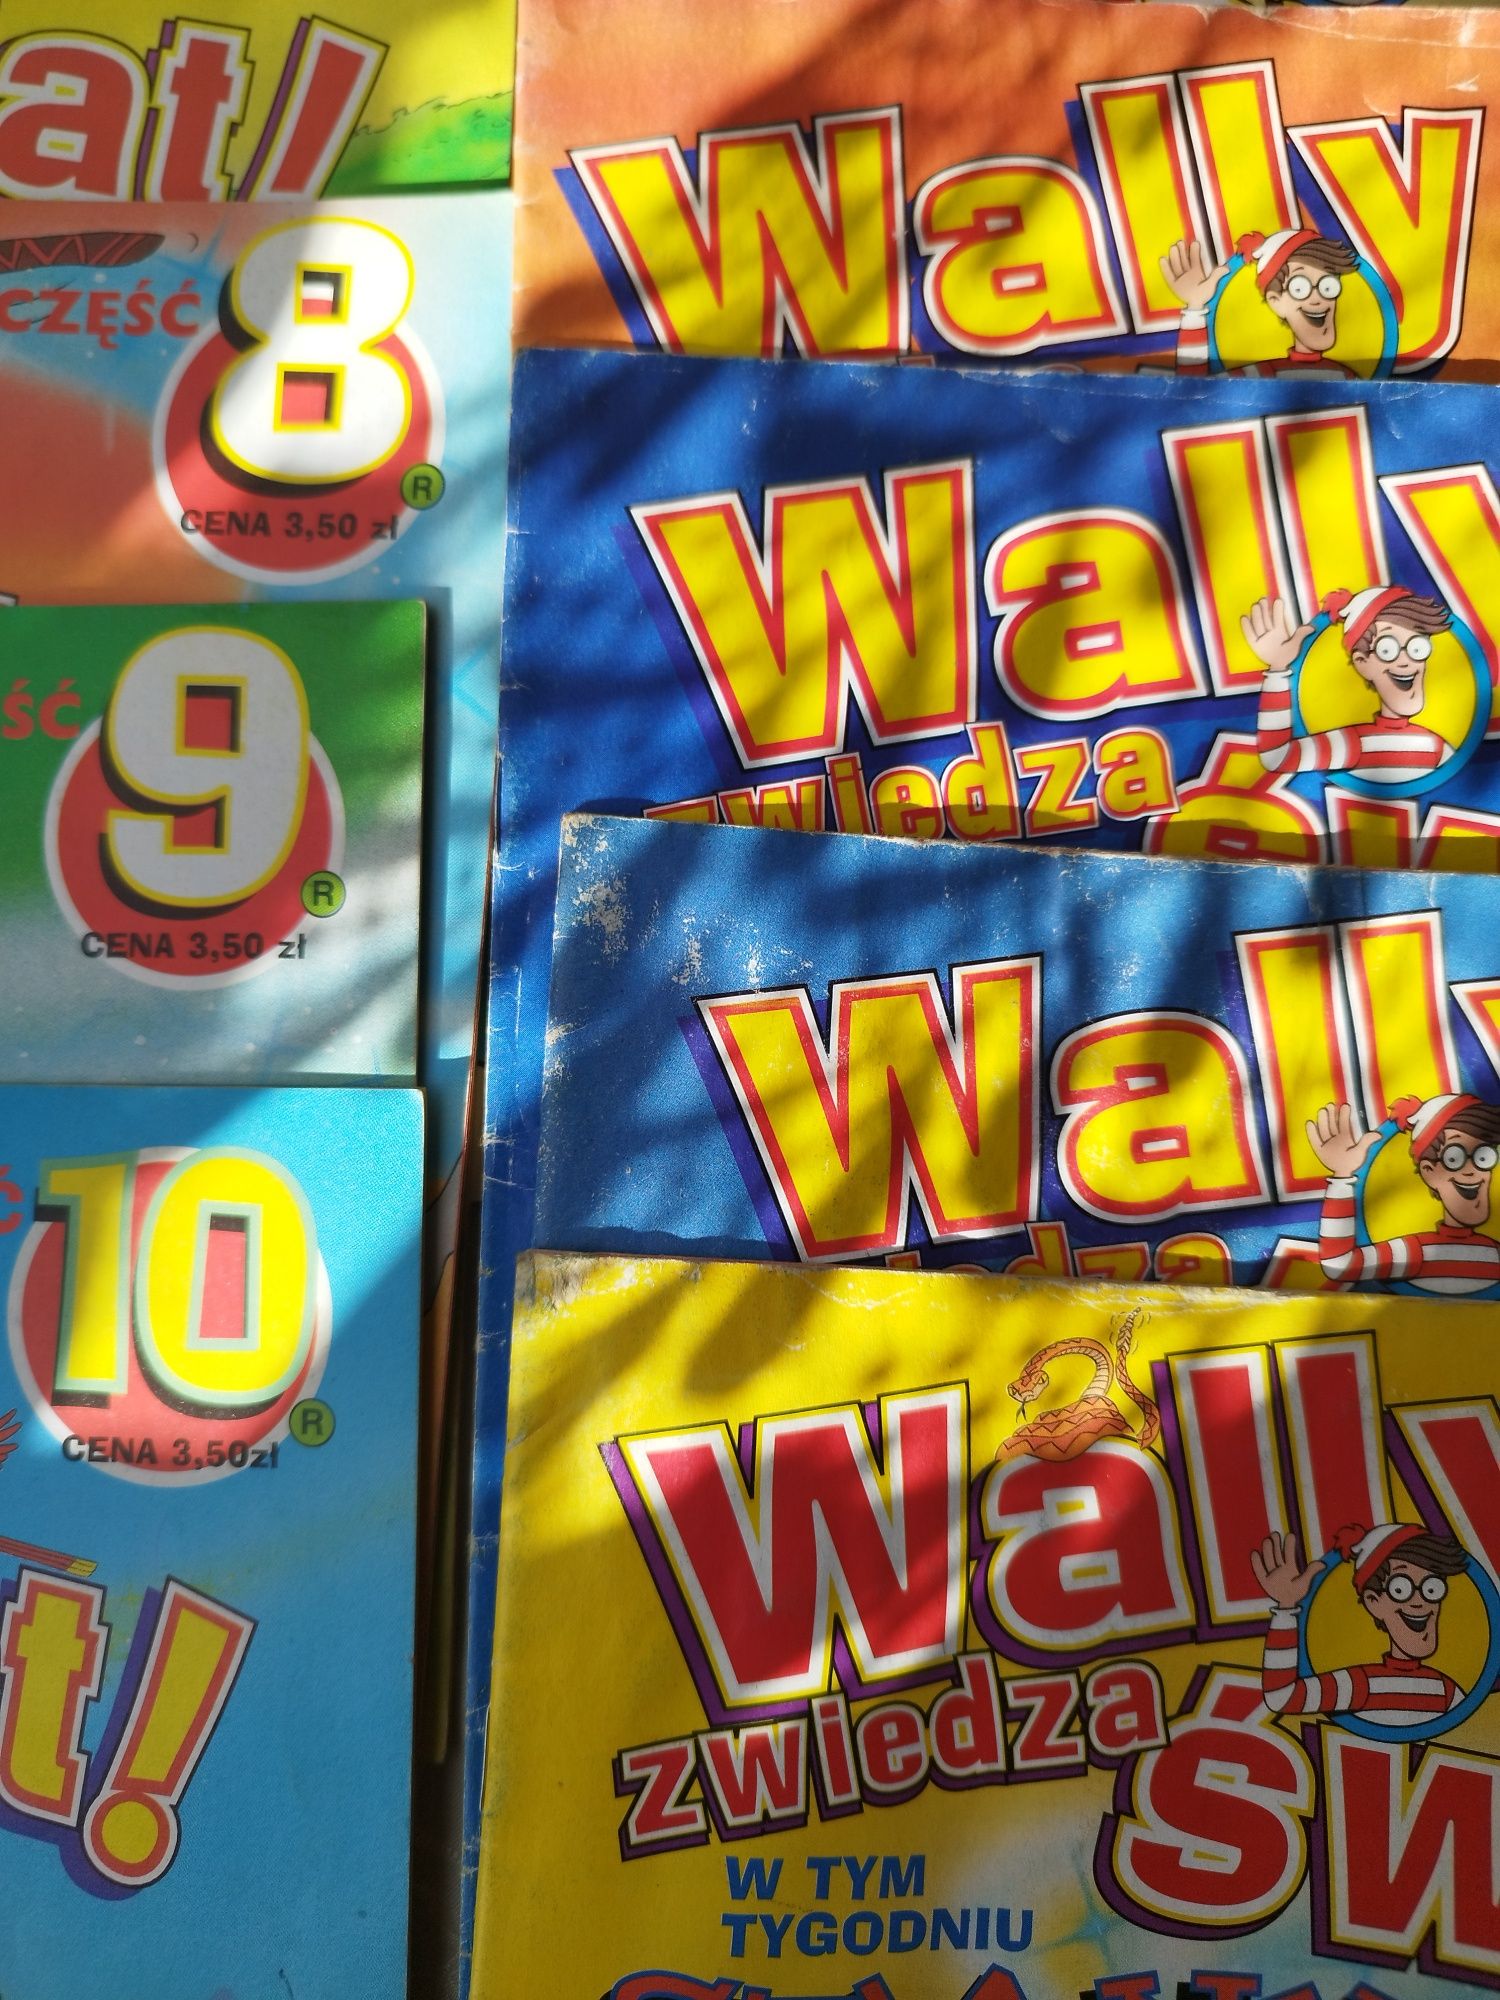 Wally zwiedza świat 22 numery + gratis